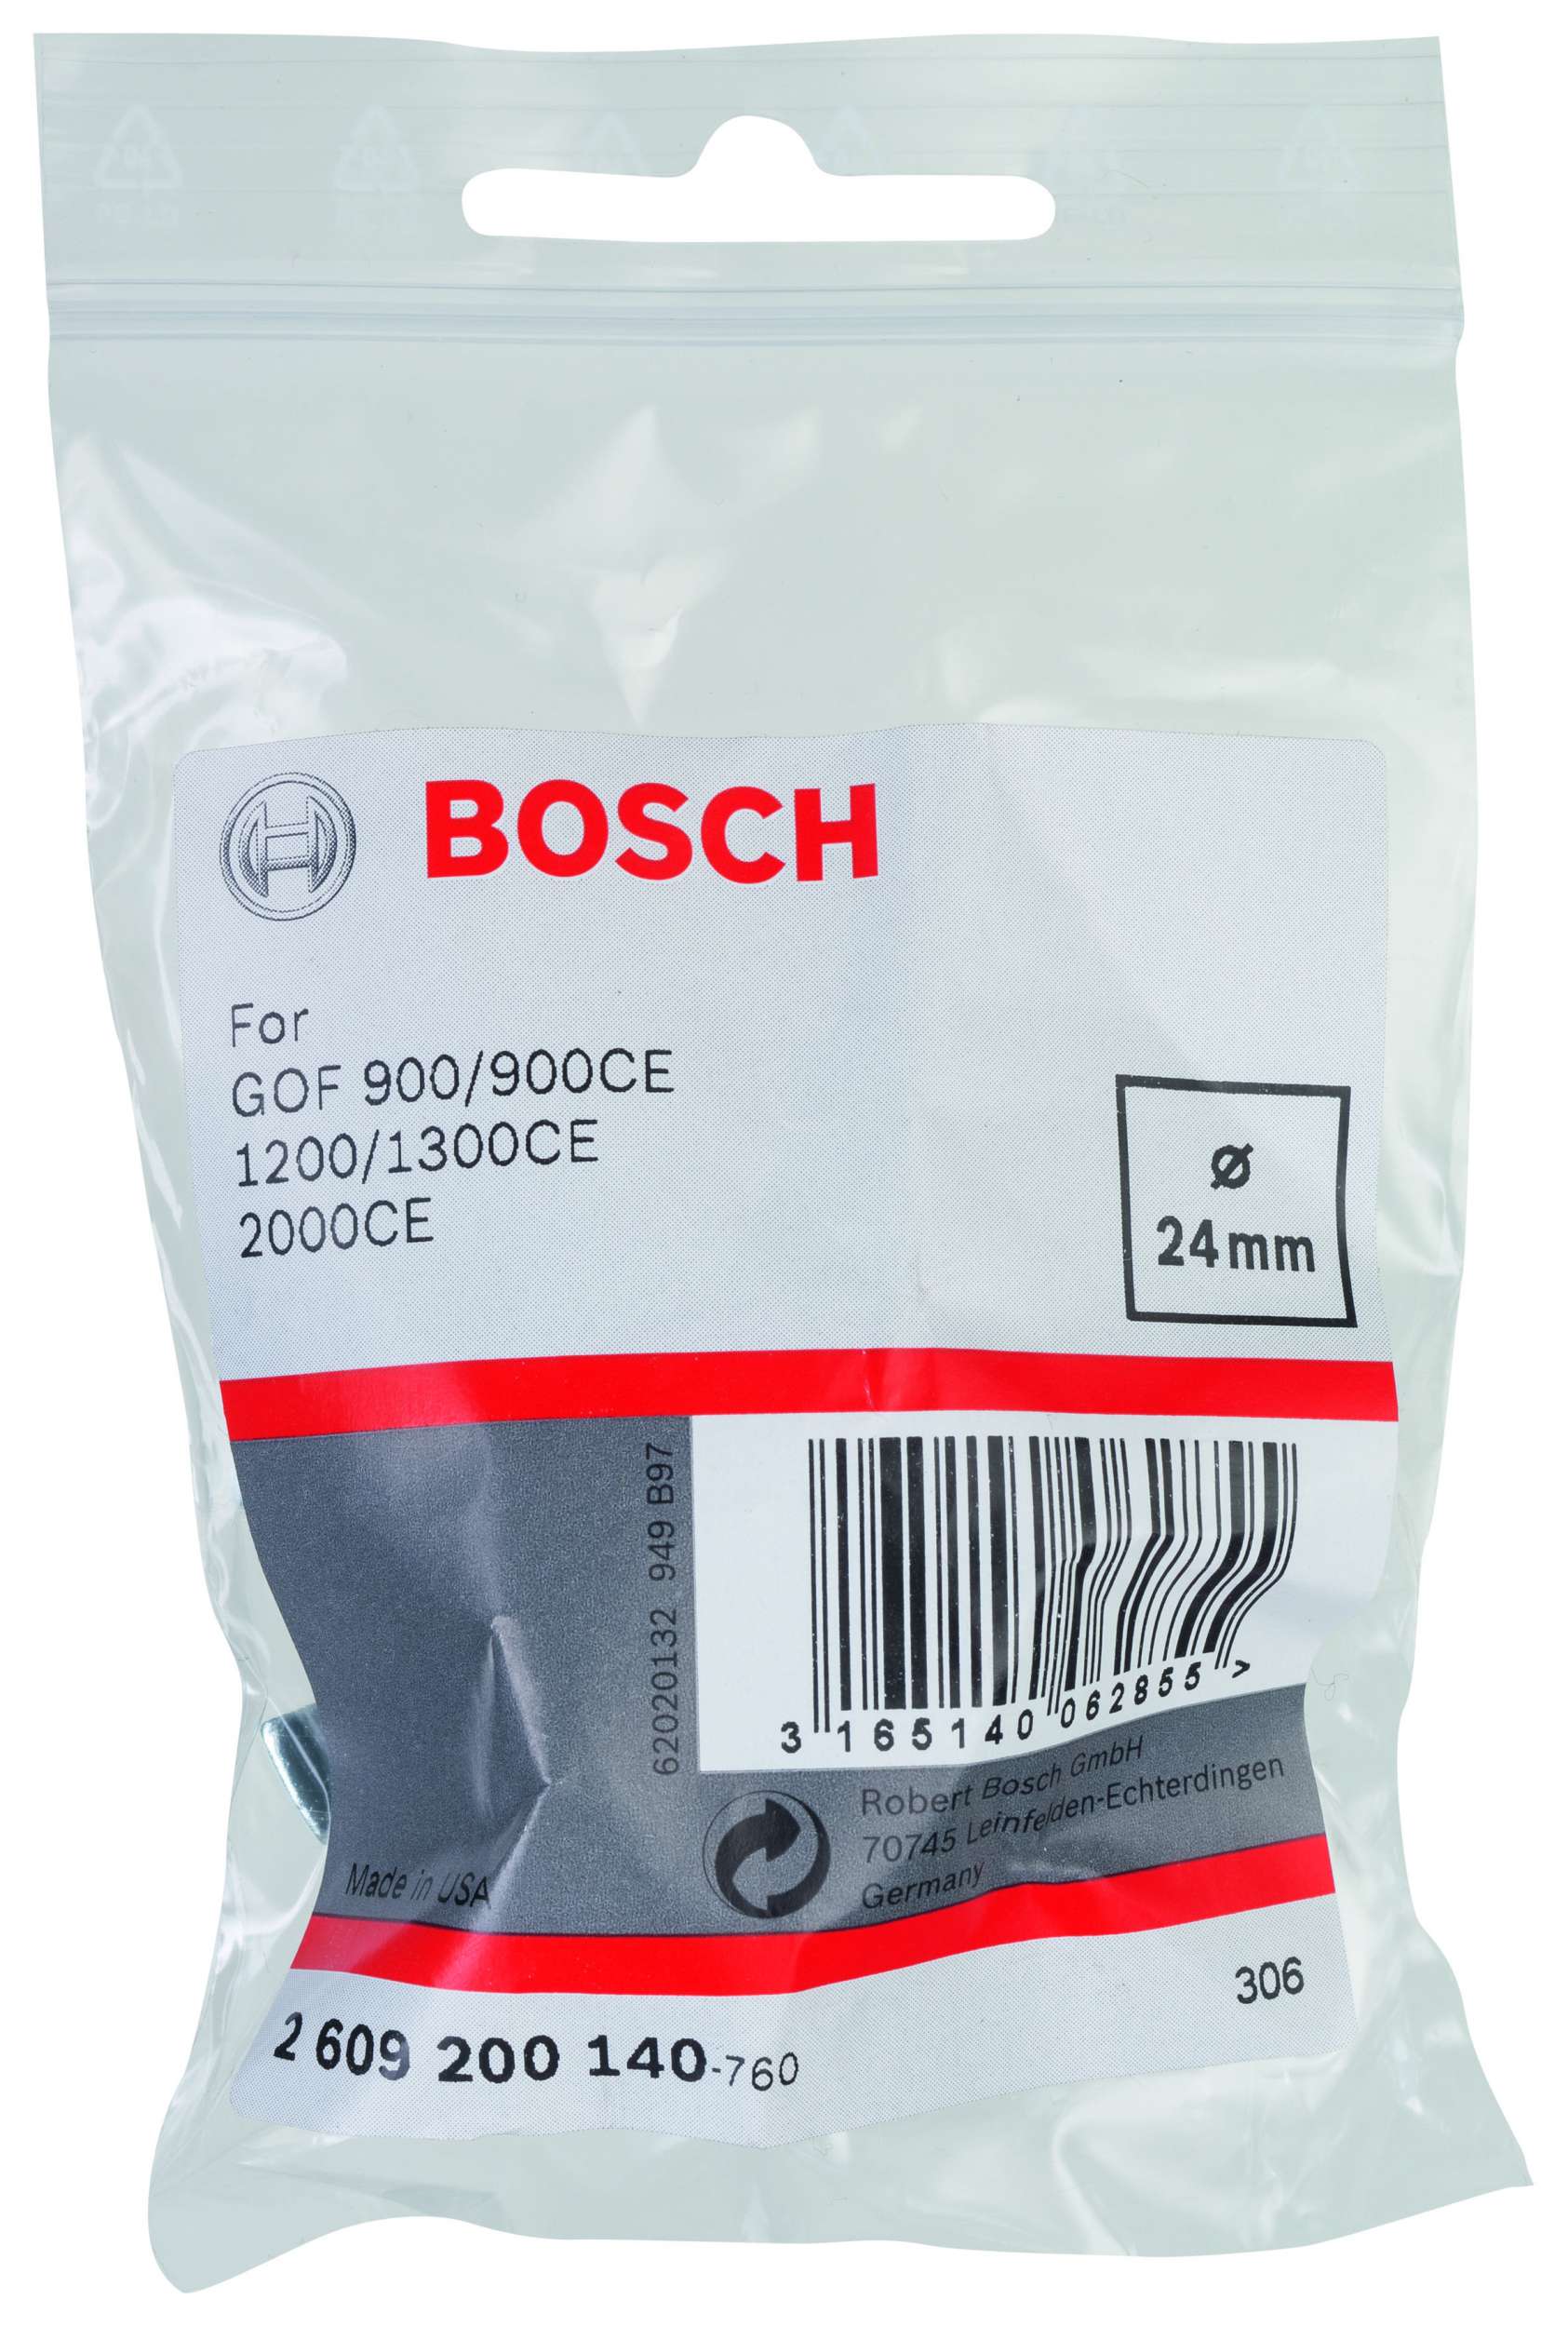 Bosch - Freze Kopyalama Sablonu 24 mm